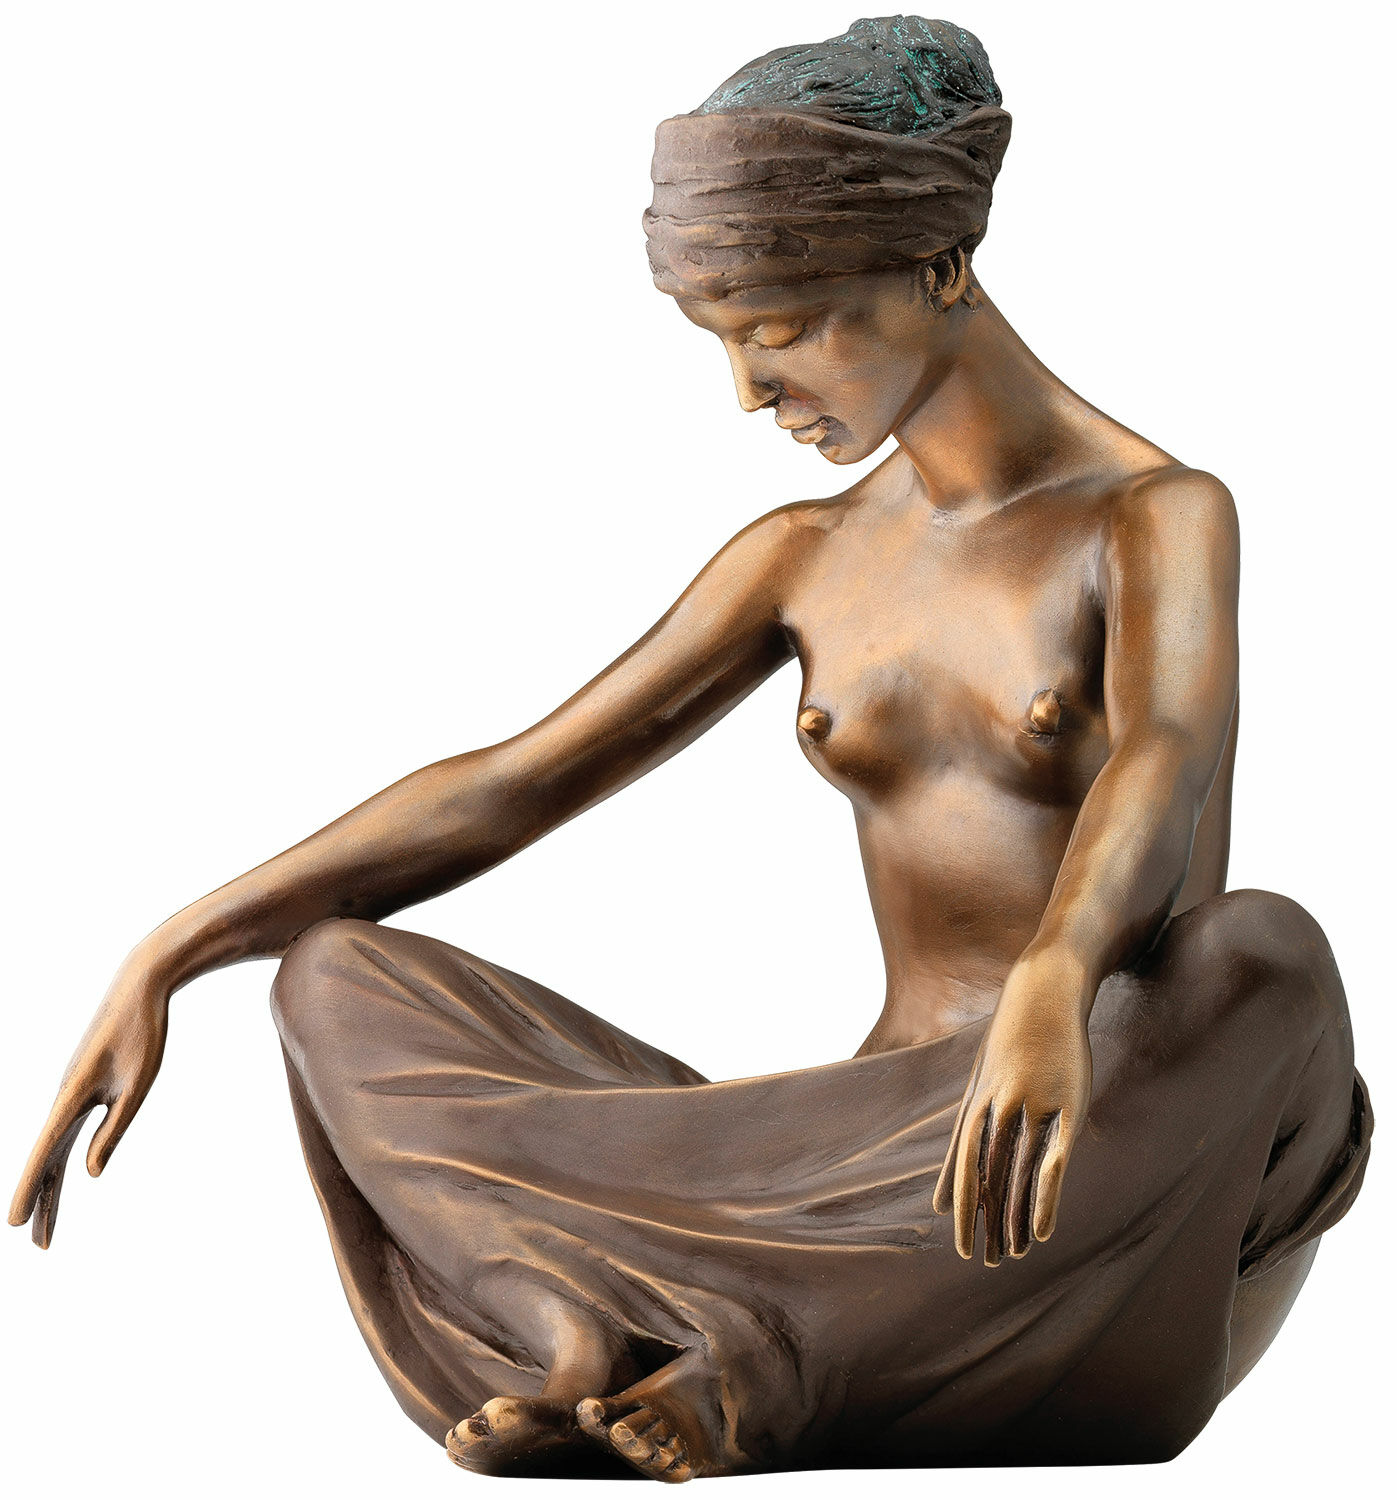 Skulptur "Bølger", bronzeversion von Erwin A. Schinzel